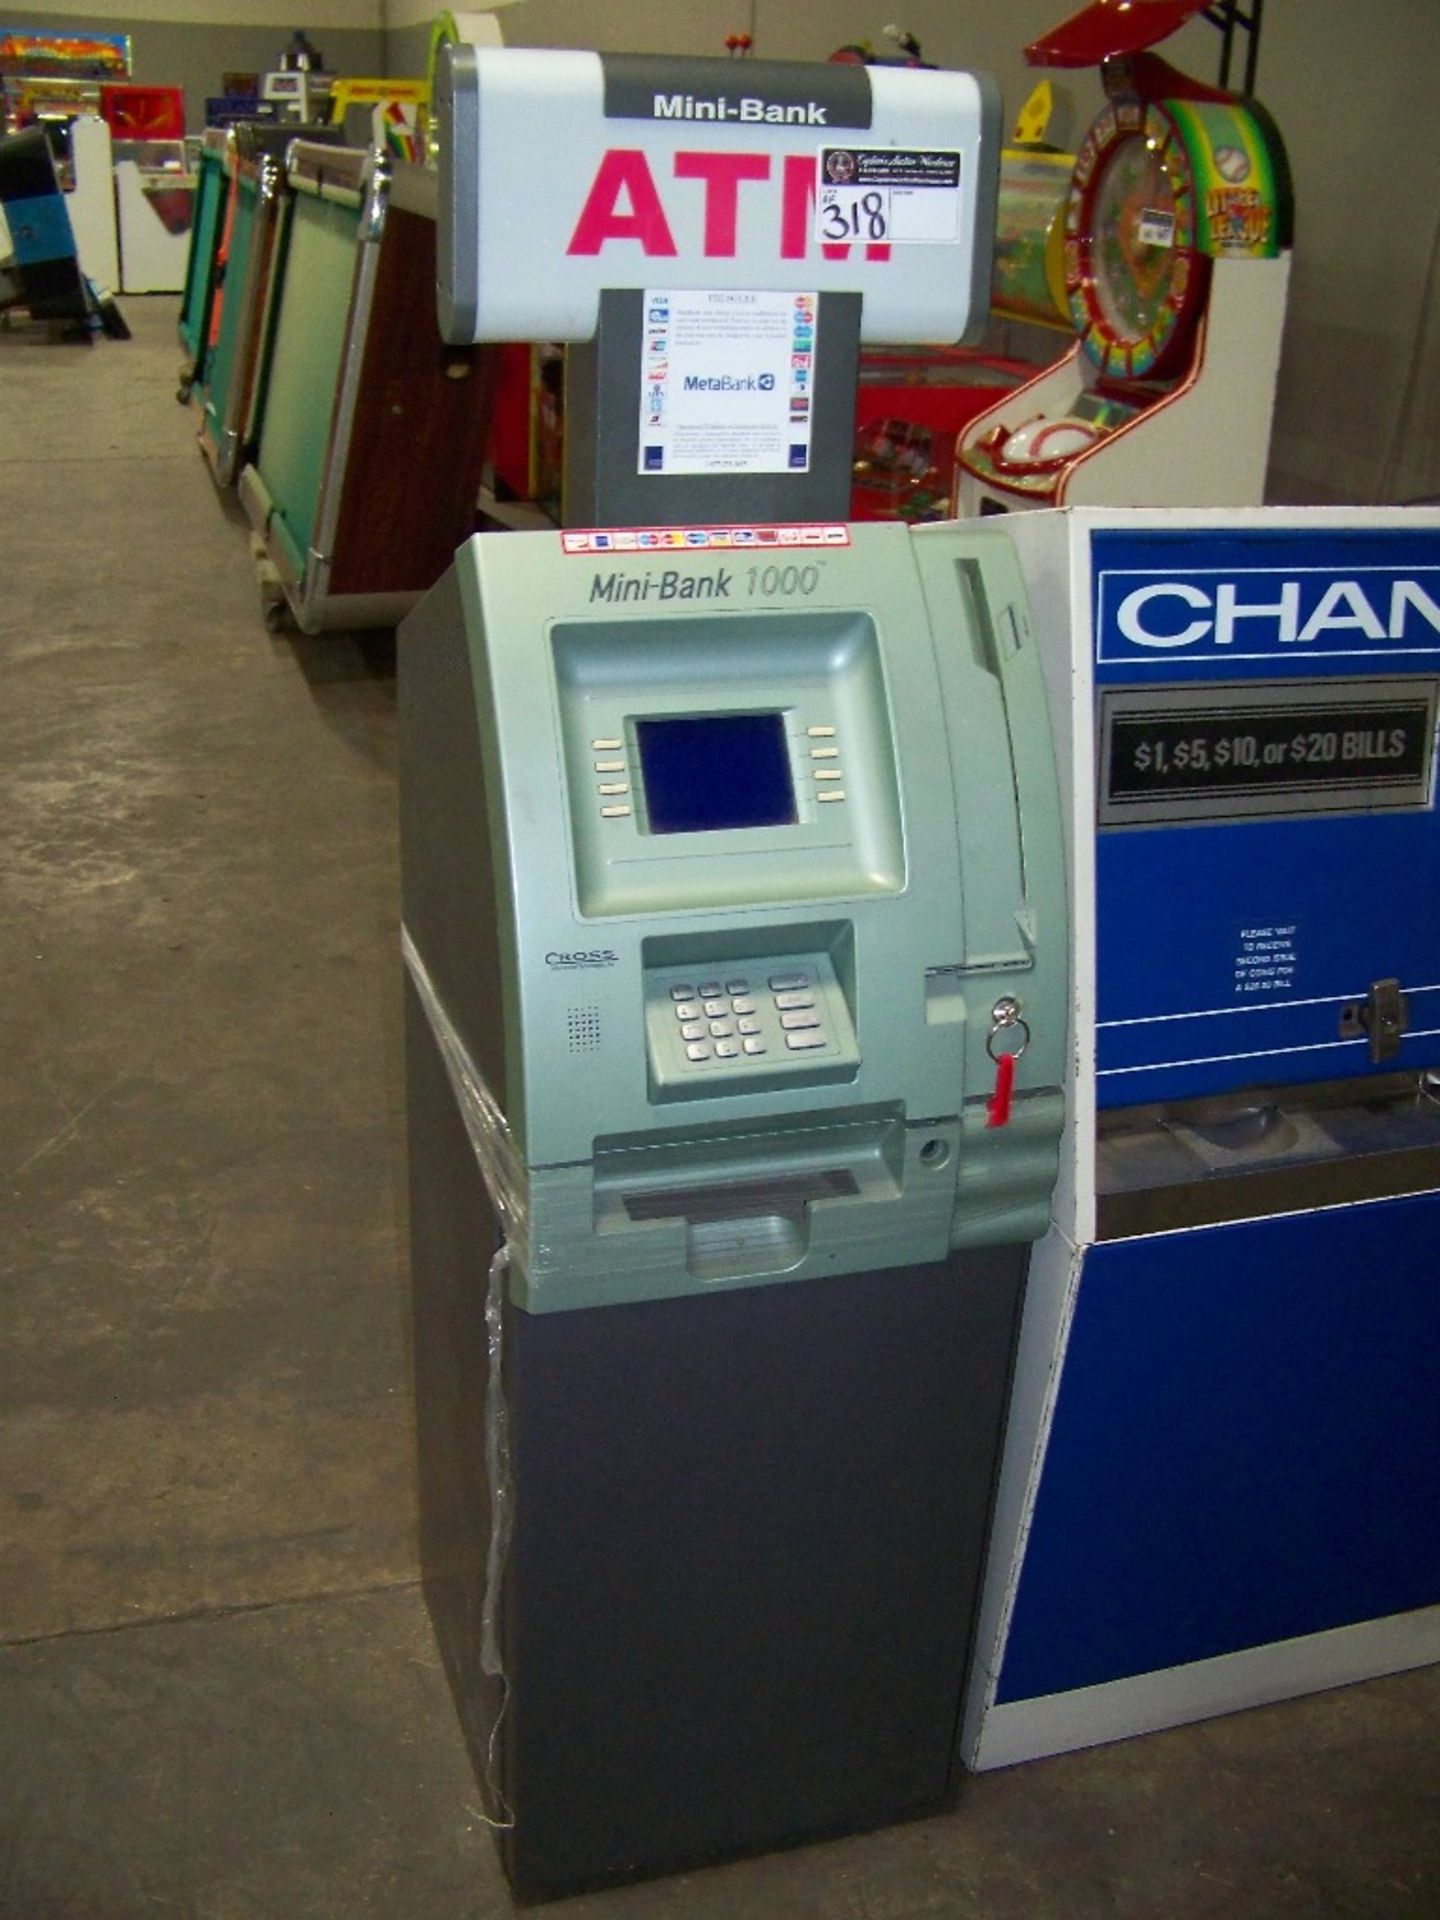 ATM MONEY VENDING KIOSK MACHINE